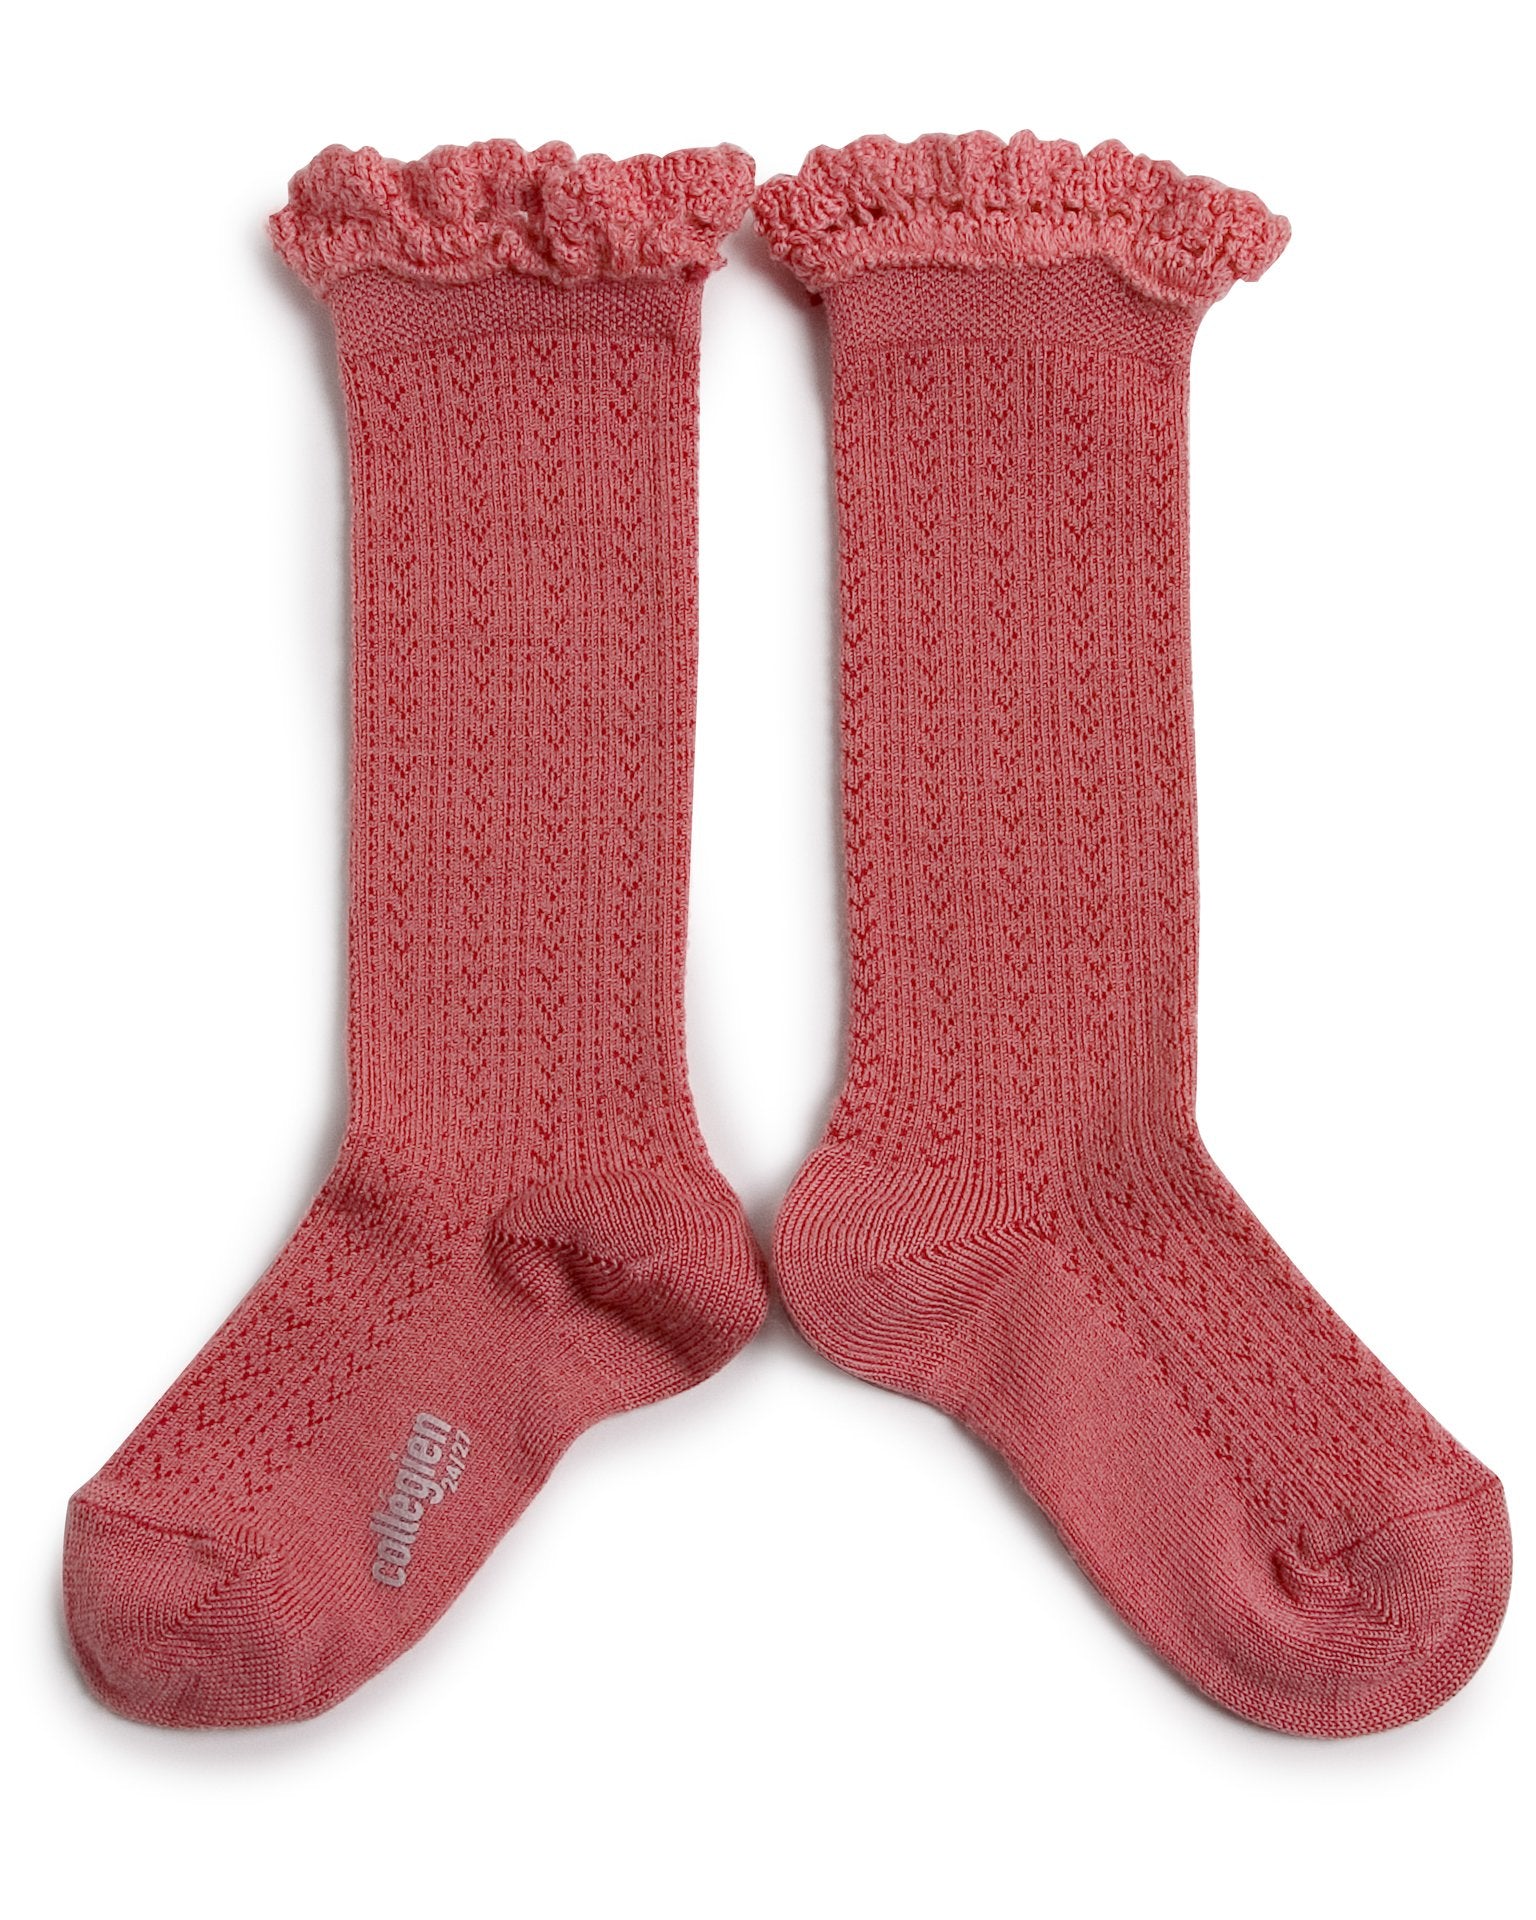 Little collegien accessories adeline knee socks in rose litchi